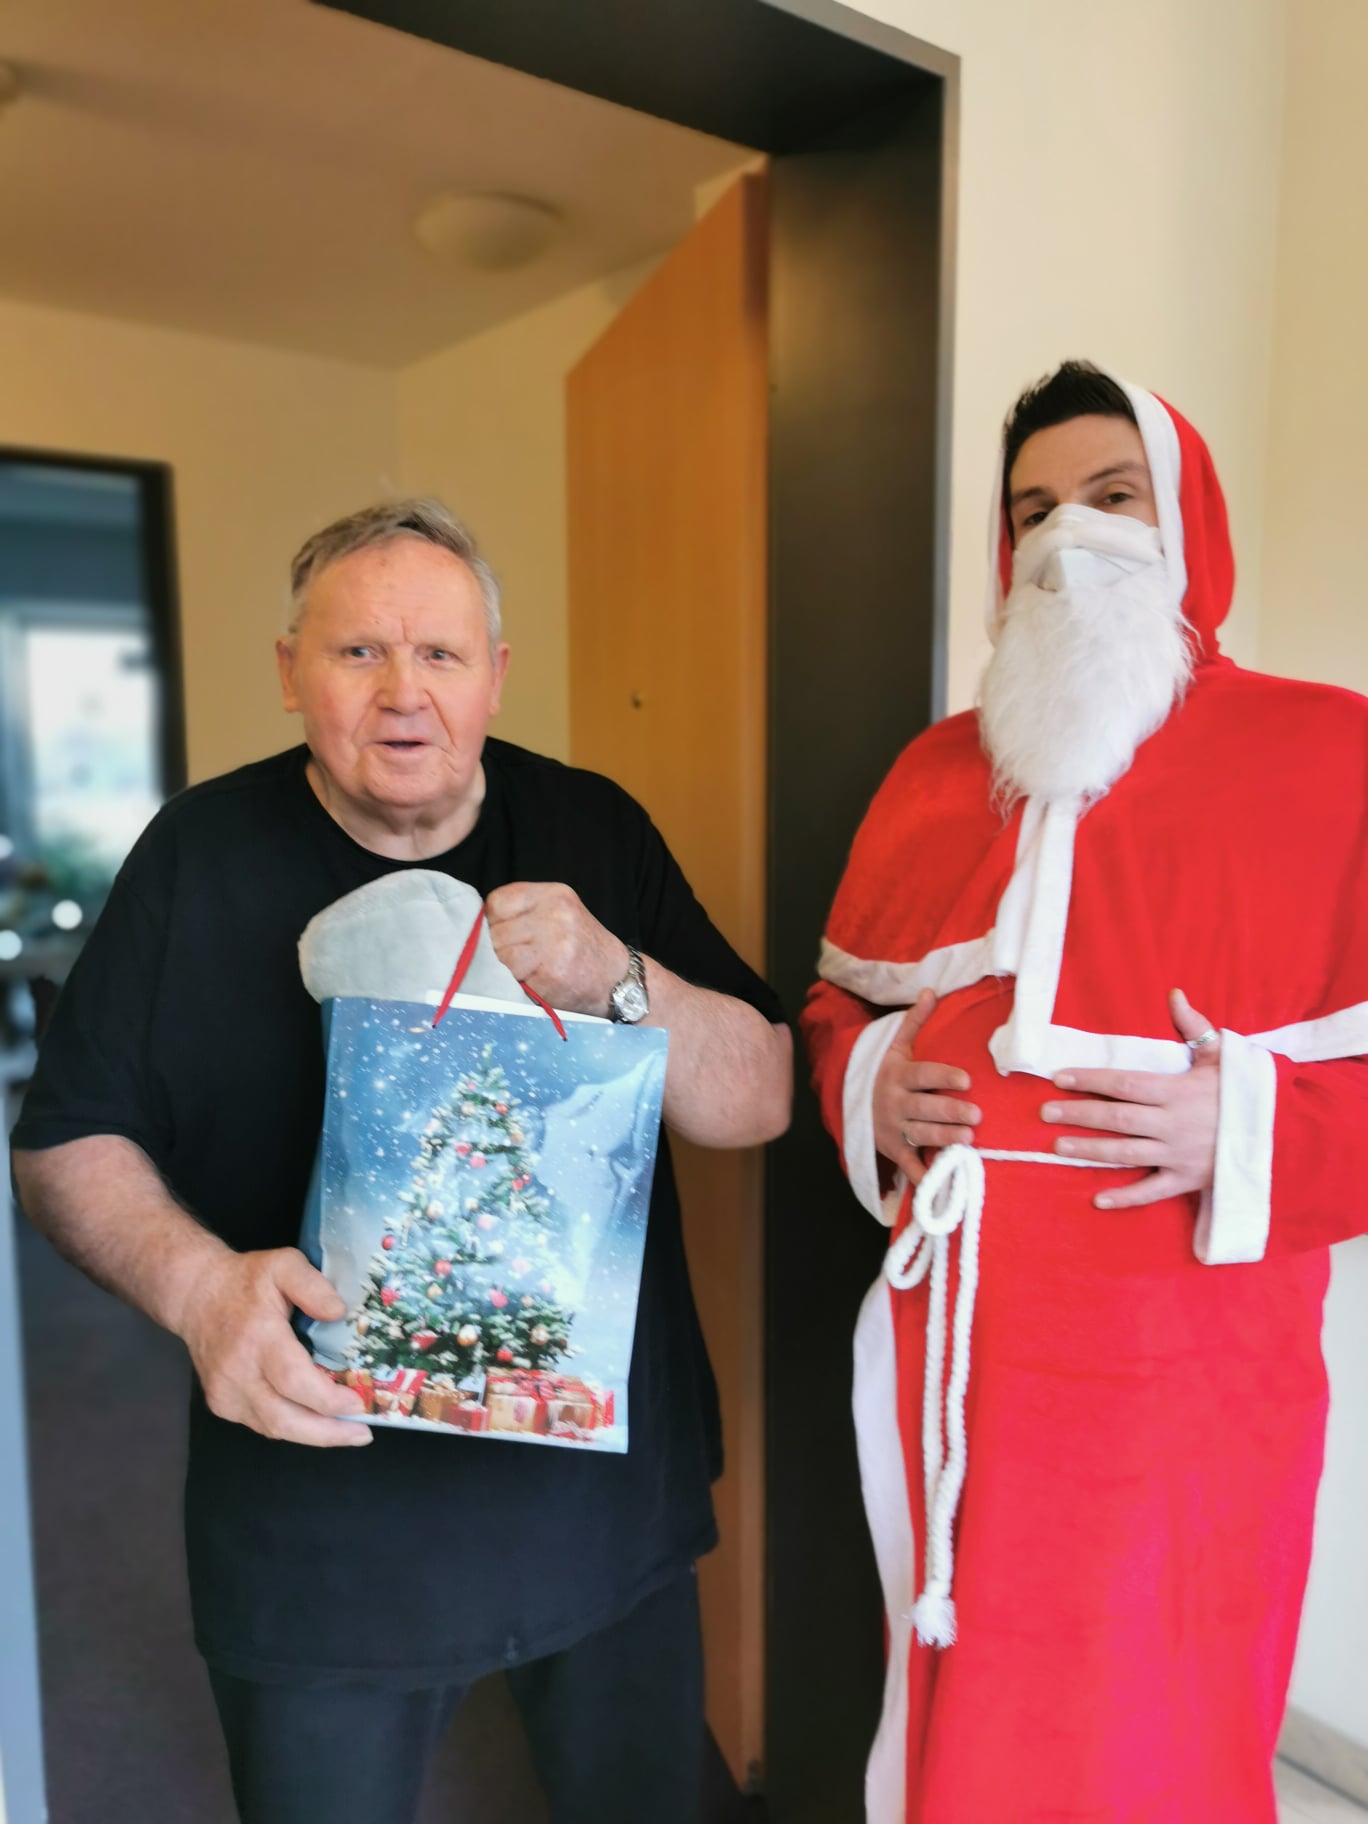 Bewohner des Altenheims "AGO Rosbach" erhält Geschenk vom Nikolaus